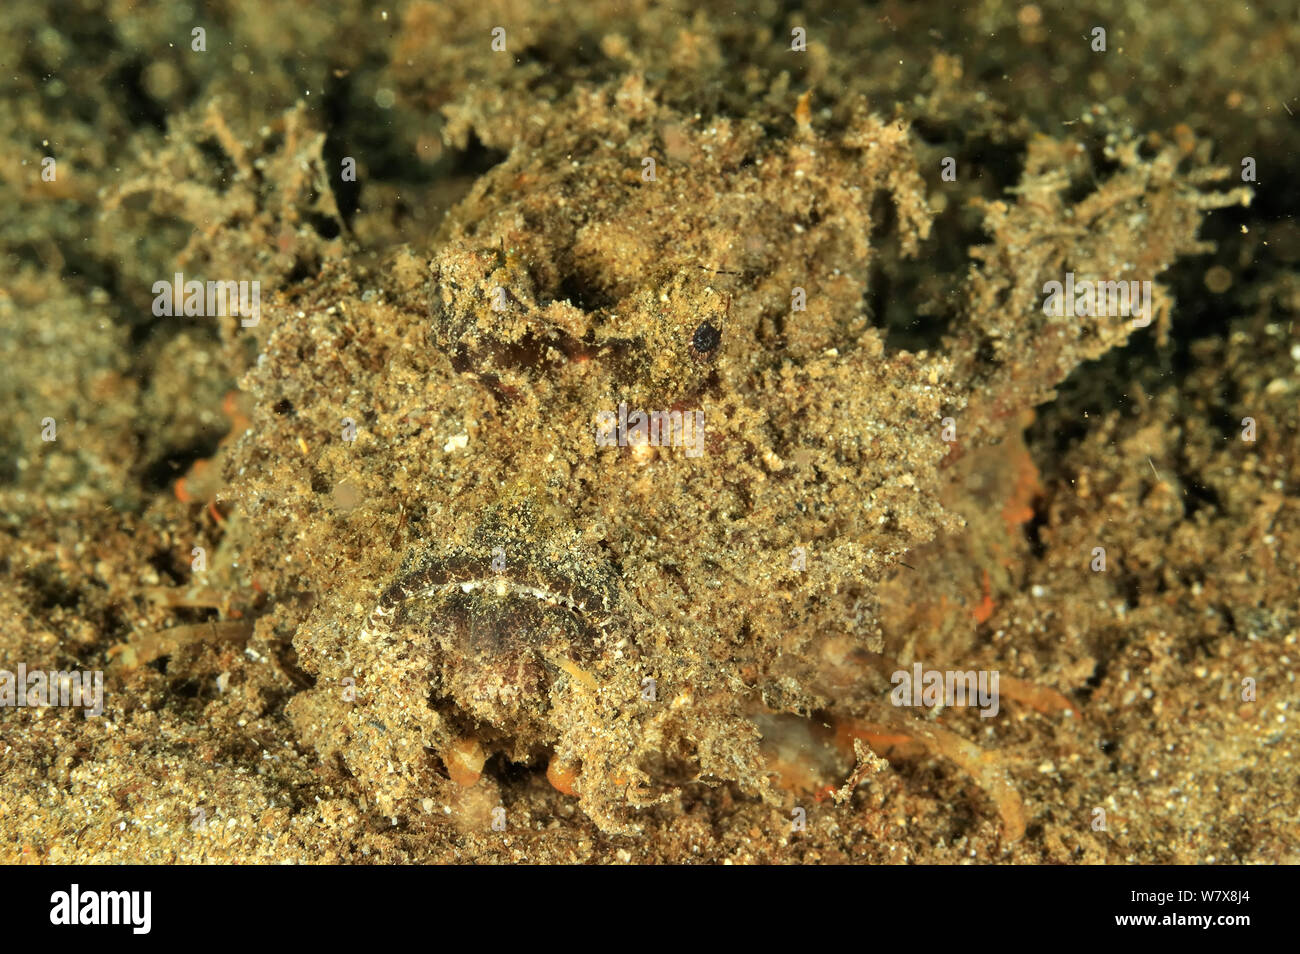 Spiny devilfish (Inimicus didactylus) camouflaged on sand, Manado, Indonesia. Sulawesi Sea. Stock Photo